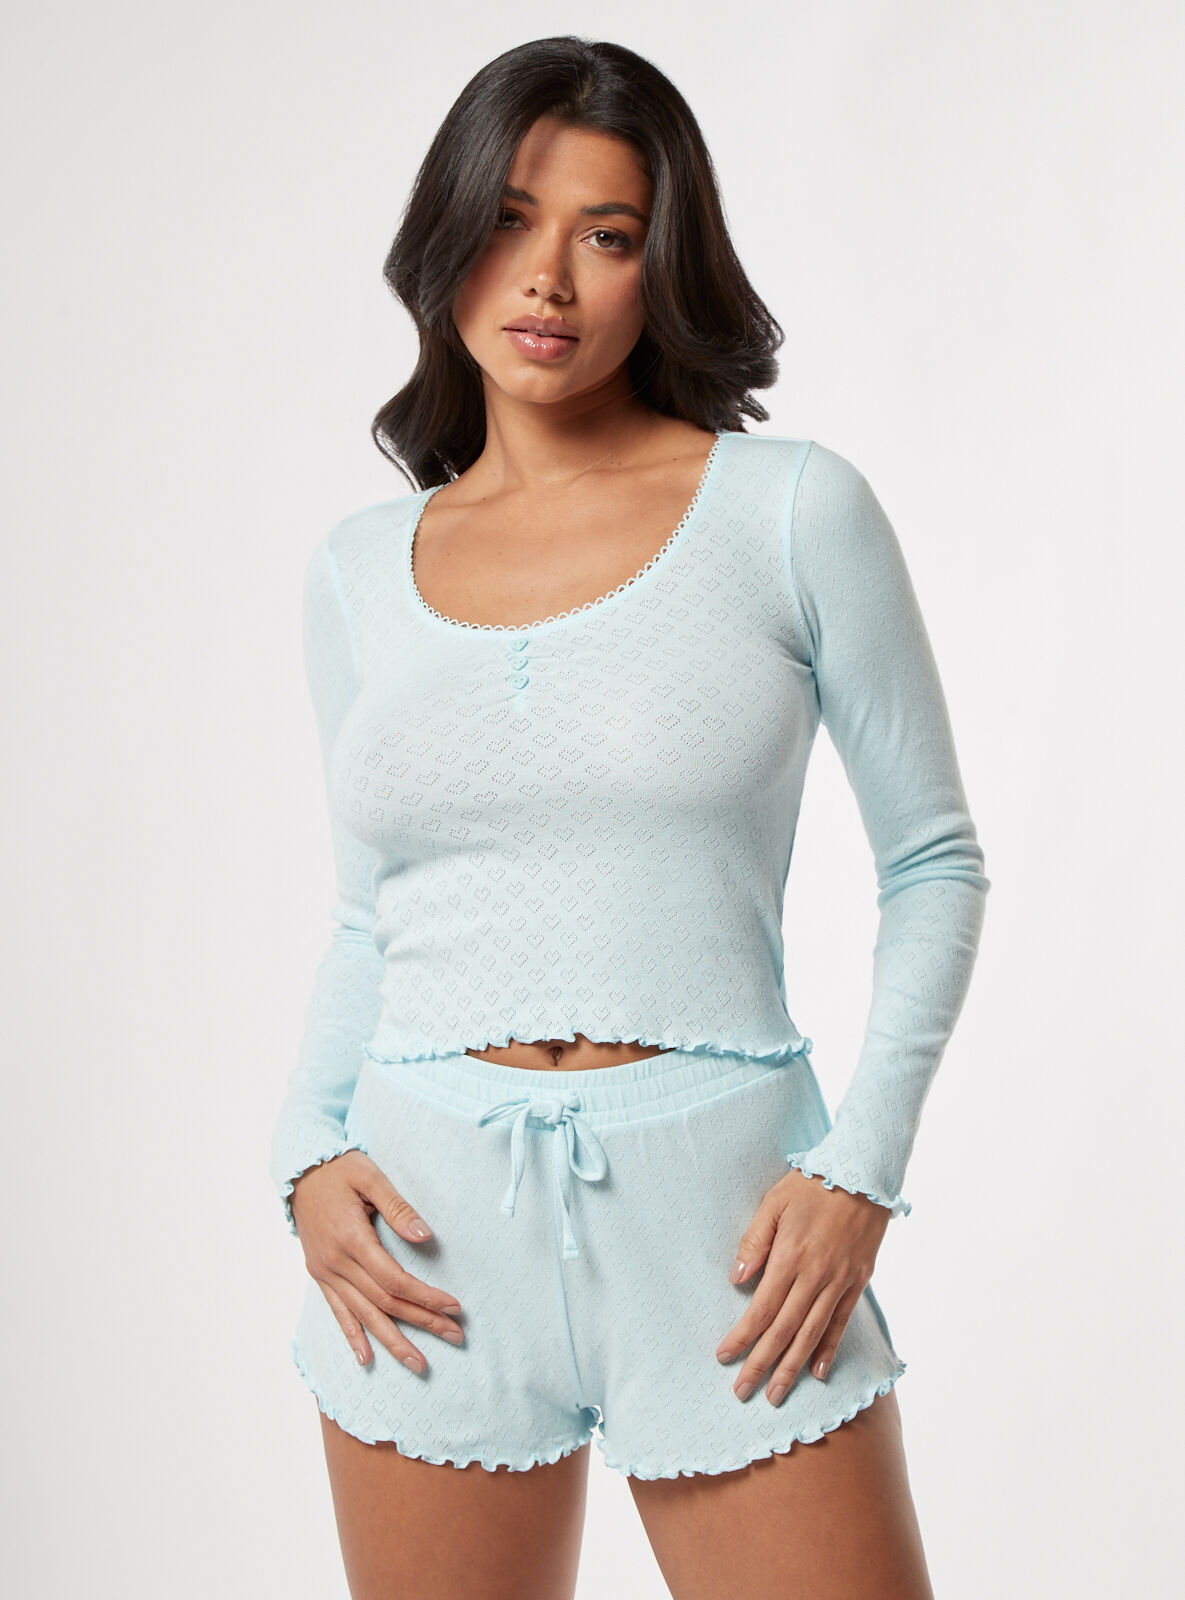 Boux Avenue Heart pointelle cotton short pyjama set - Aqua - 16